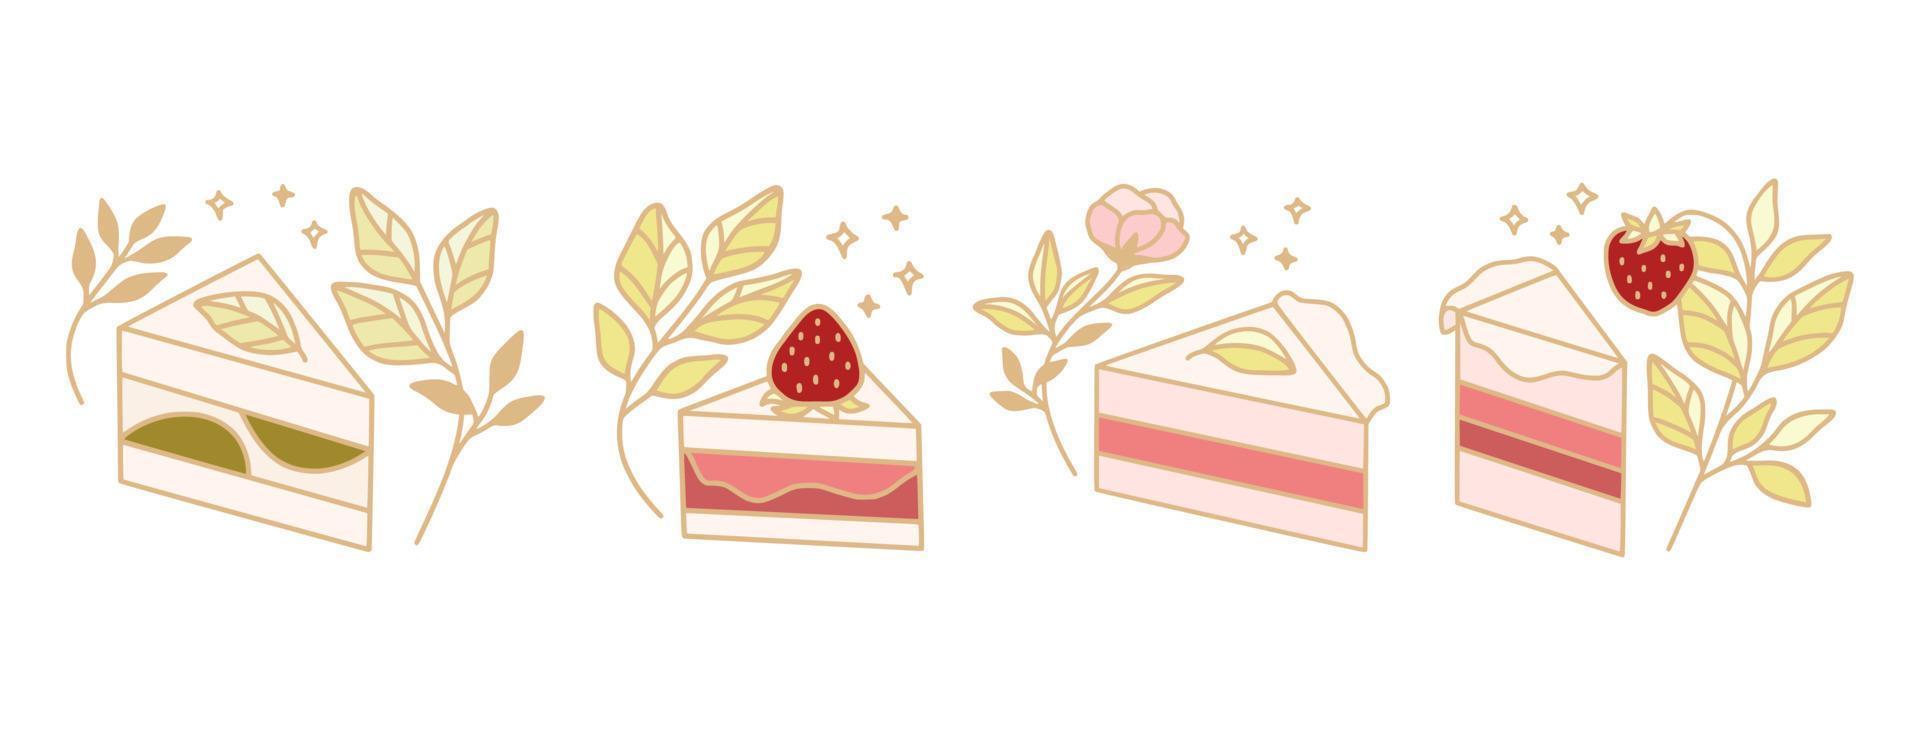 conjunto de elementos coloridos de pastelería, tarta y panadería para imágenes prediseñadas o logotipo de alimentos vector